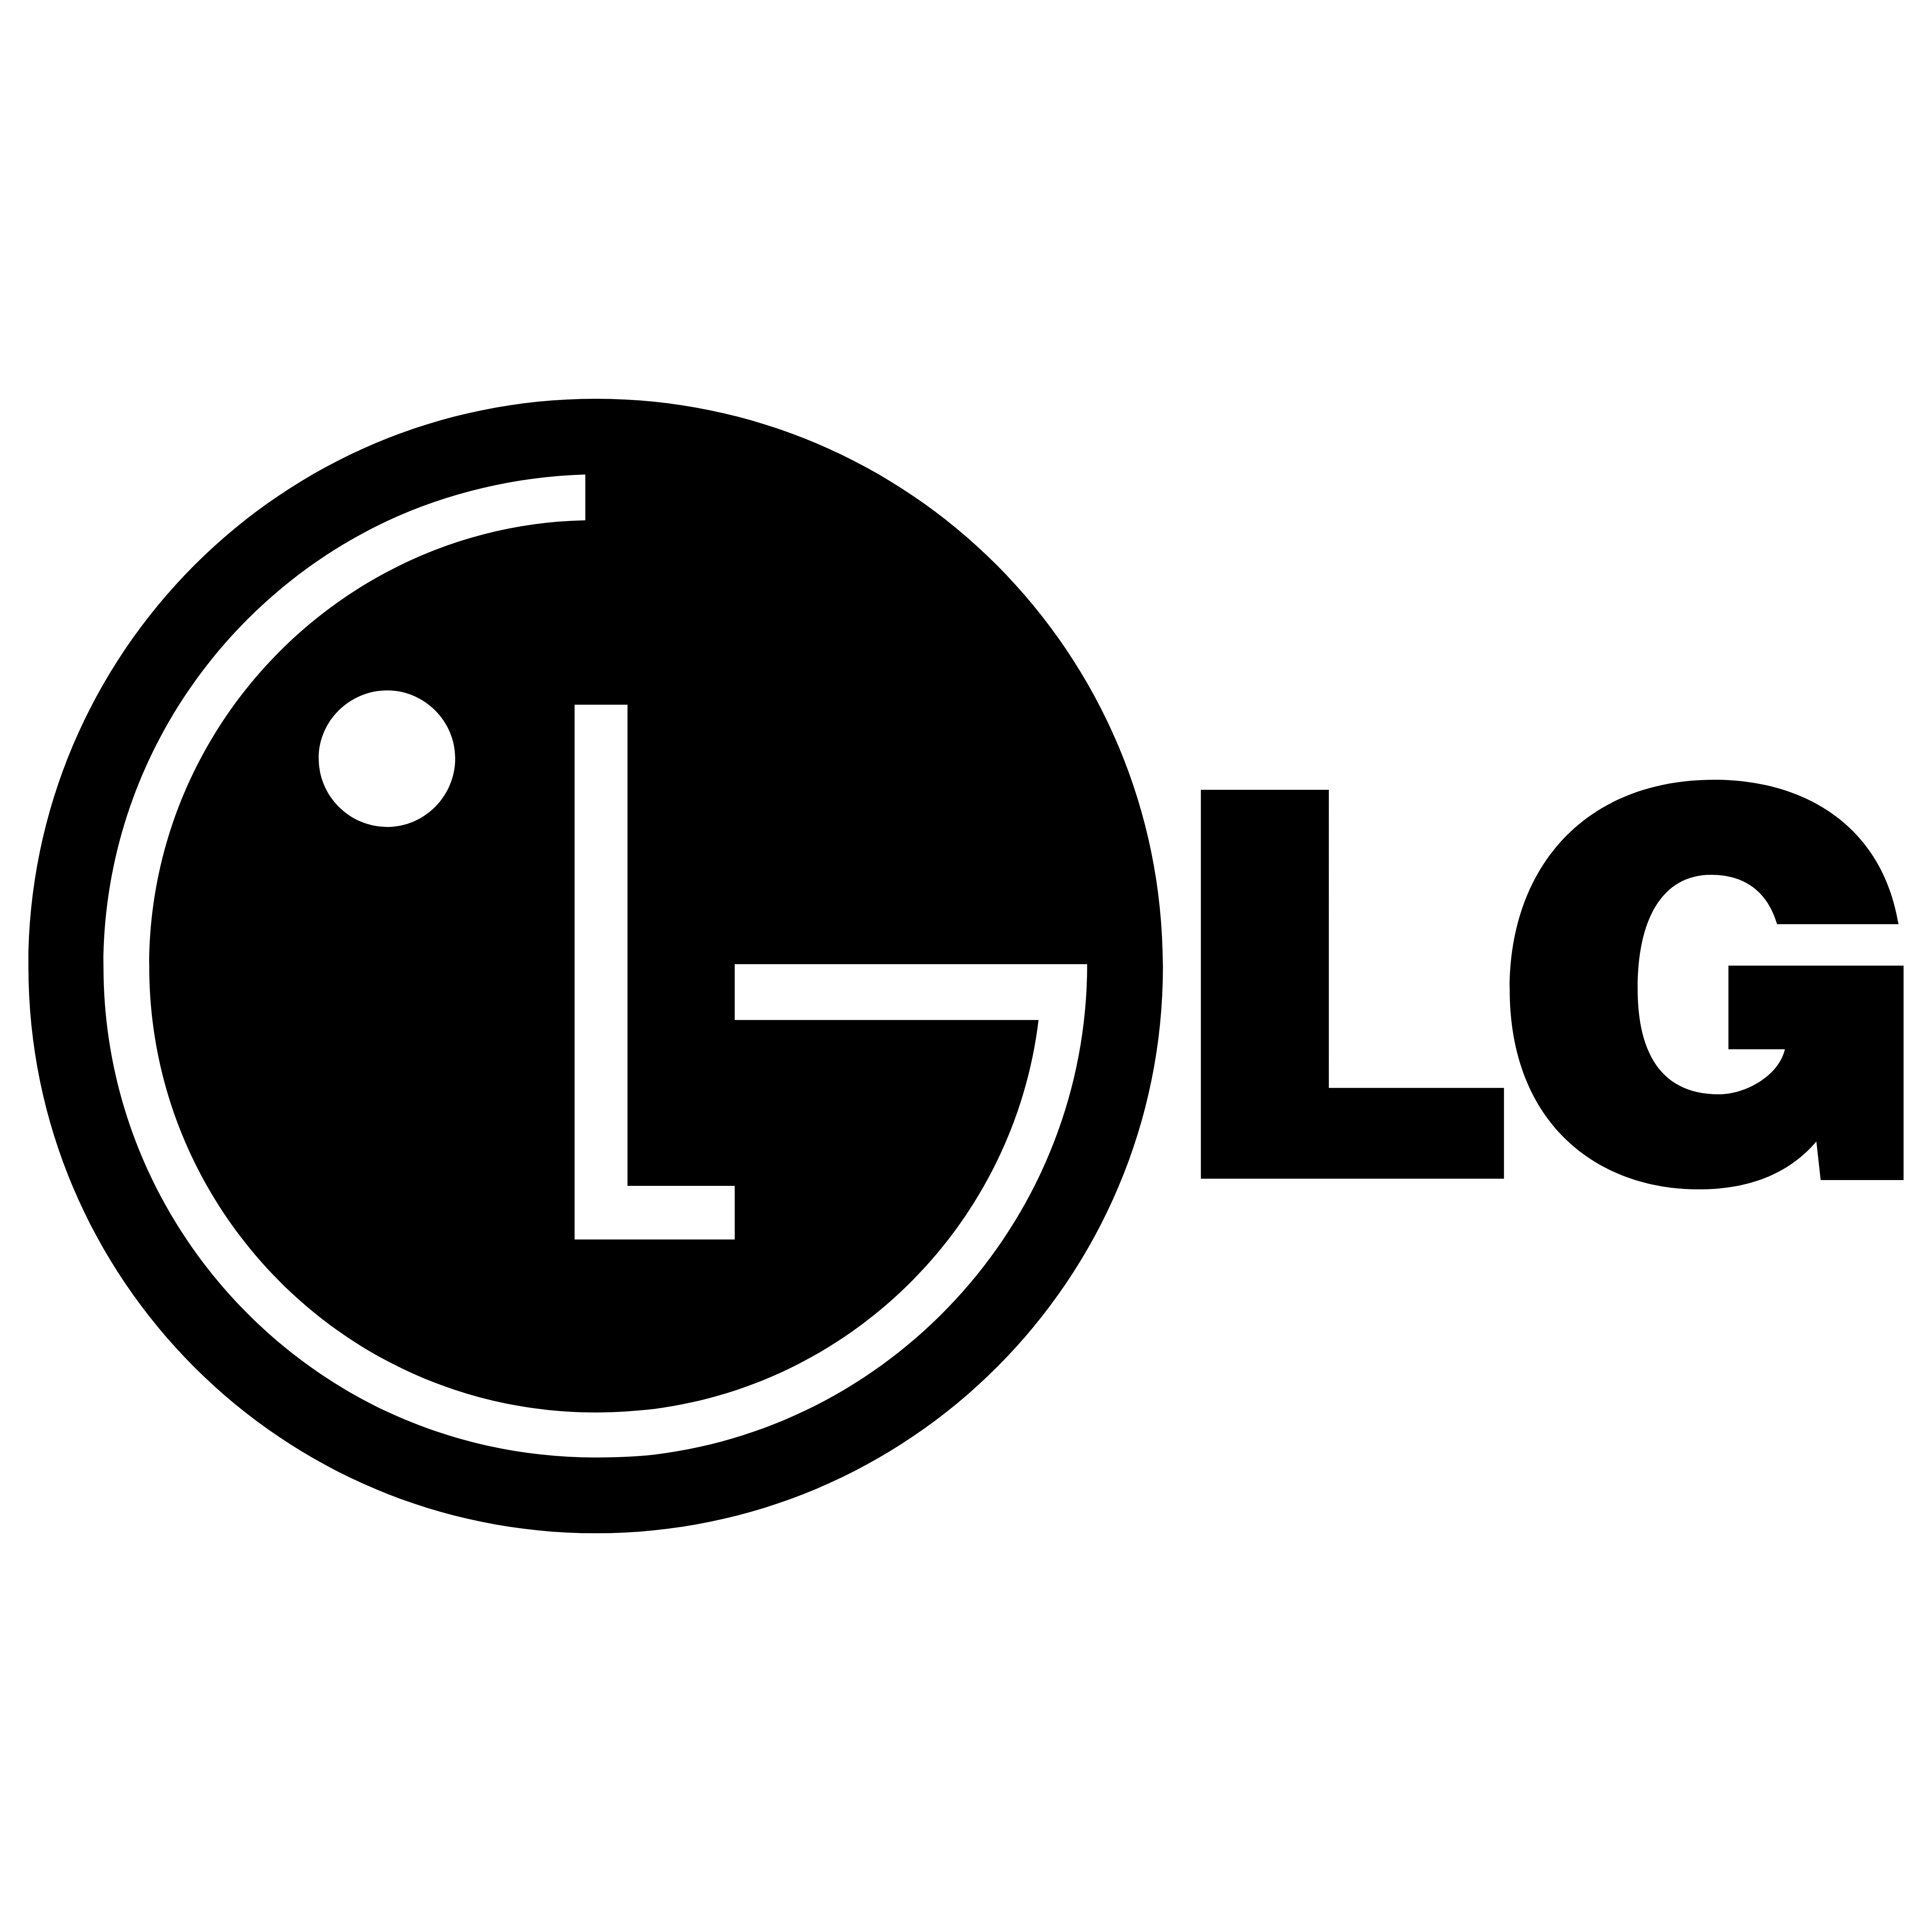 Lg телевизоры логотип. LG Electronics логотип. Логотип LG вектор. LG logo 2023. ТВ В LG логотип.